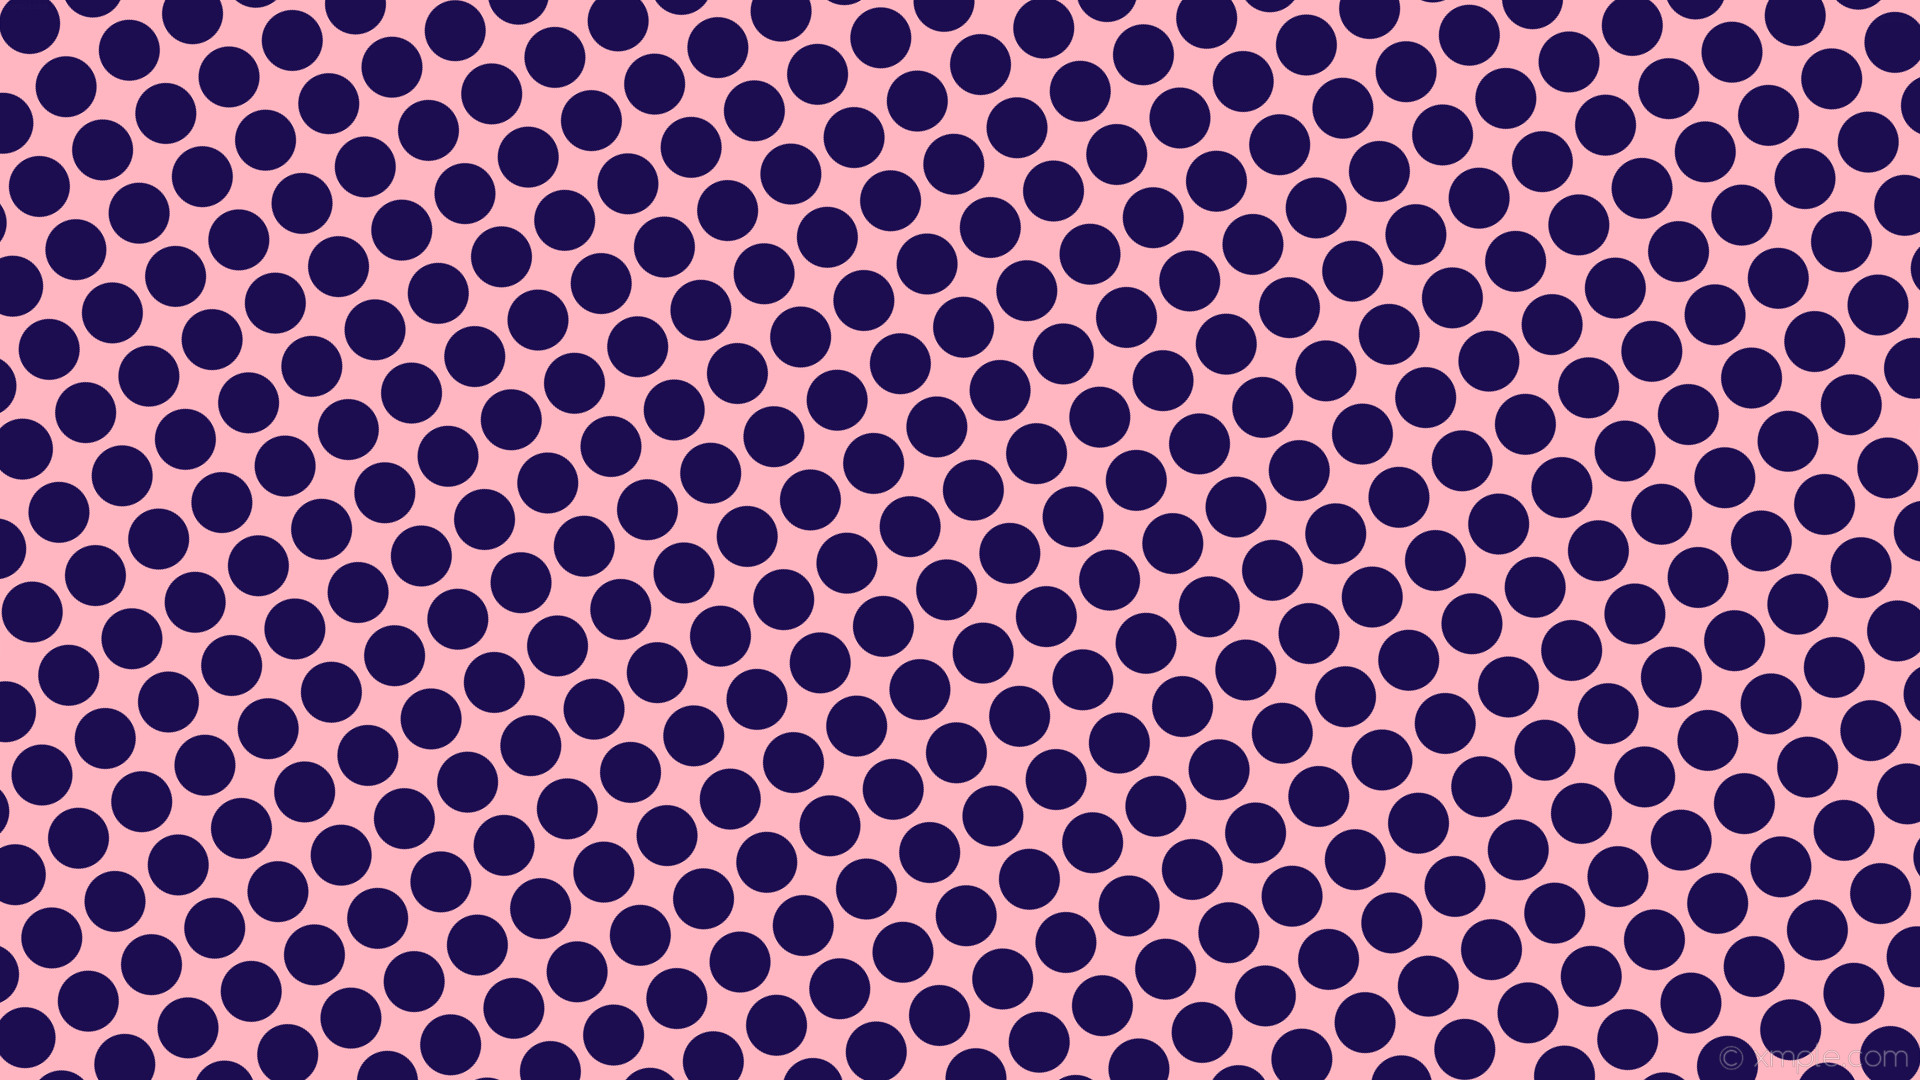 1920x1080 wallpaper dots pink polka blue spots light pink dark blue #ffb6c1 #1c0d51  210Â°